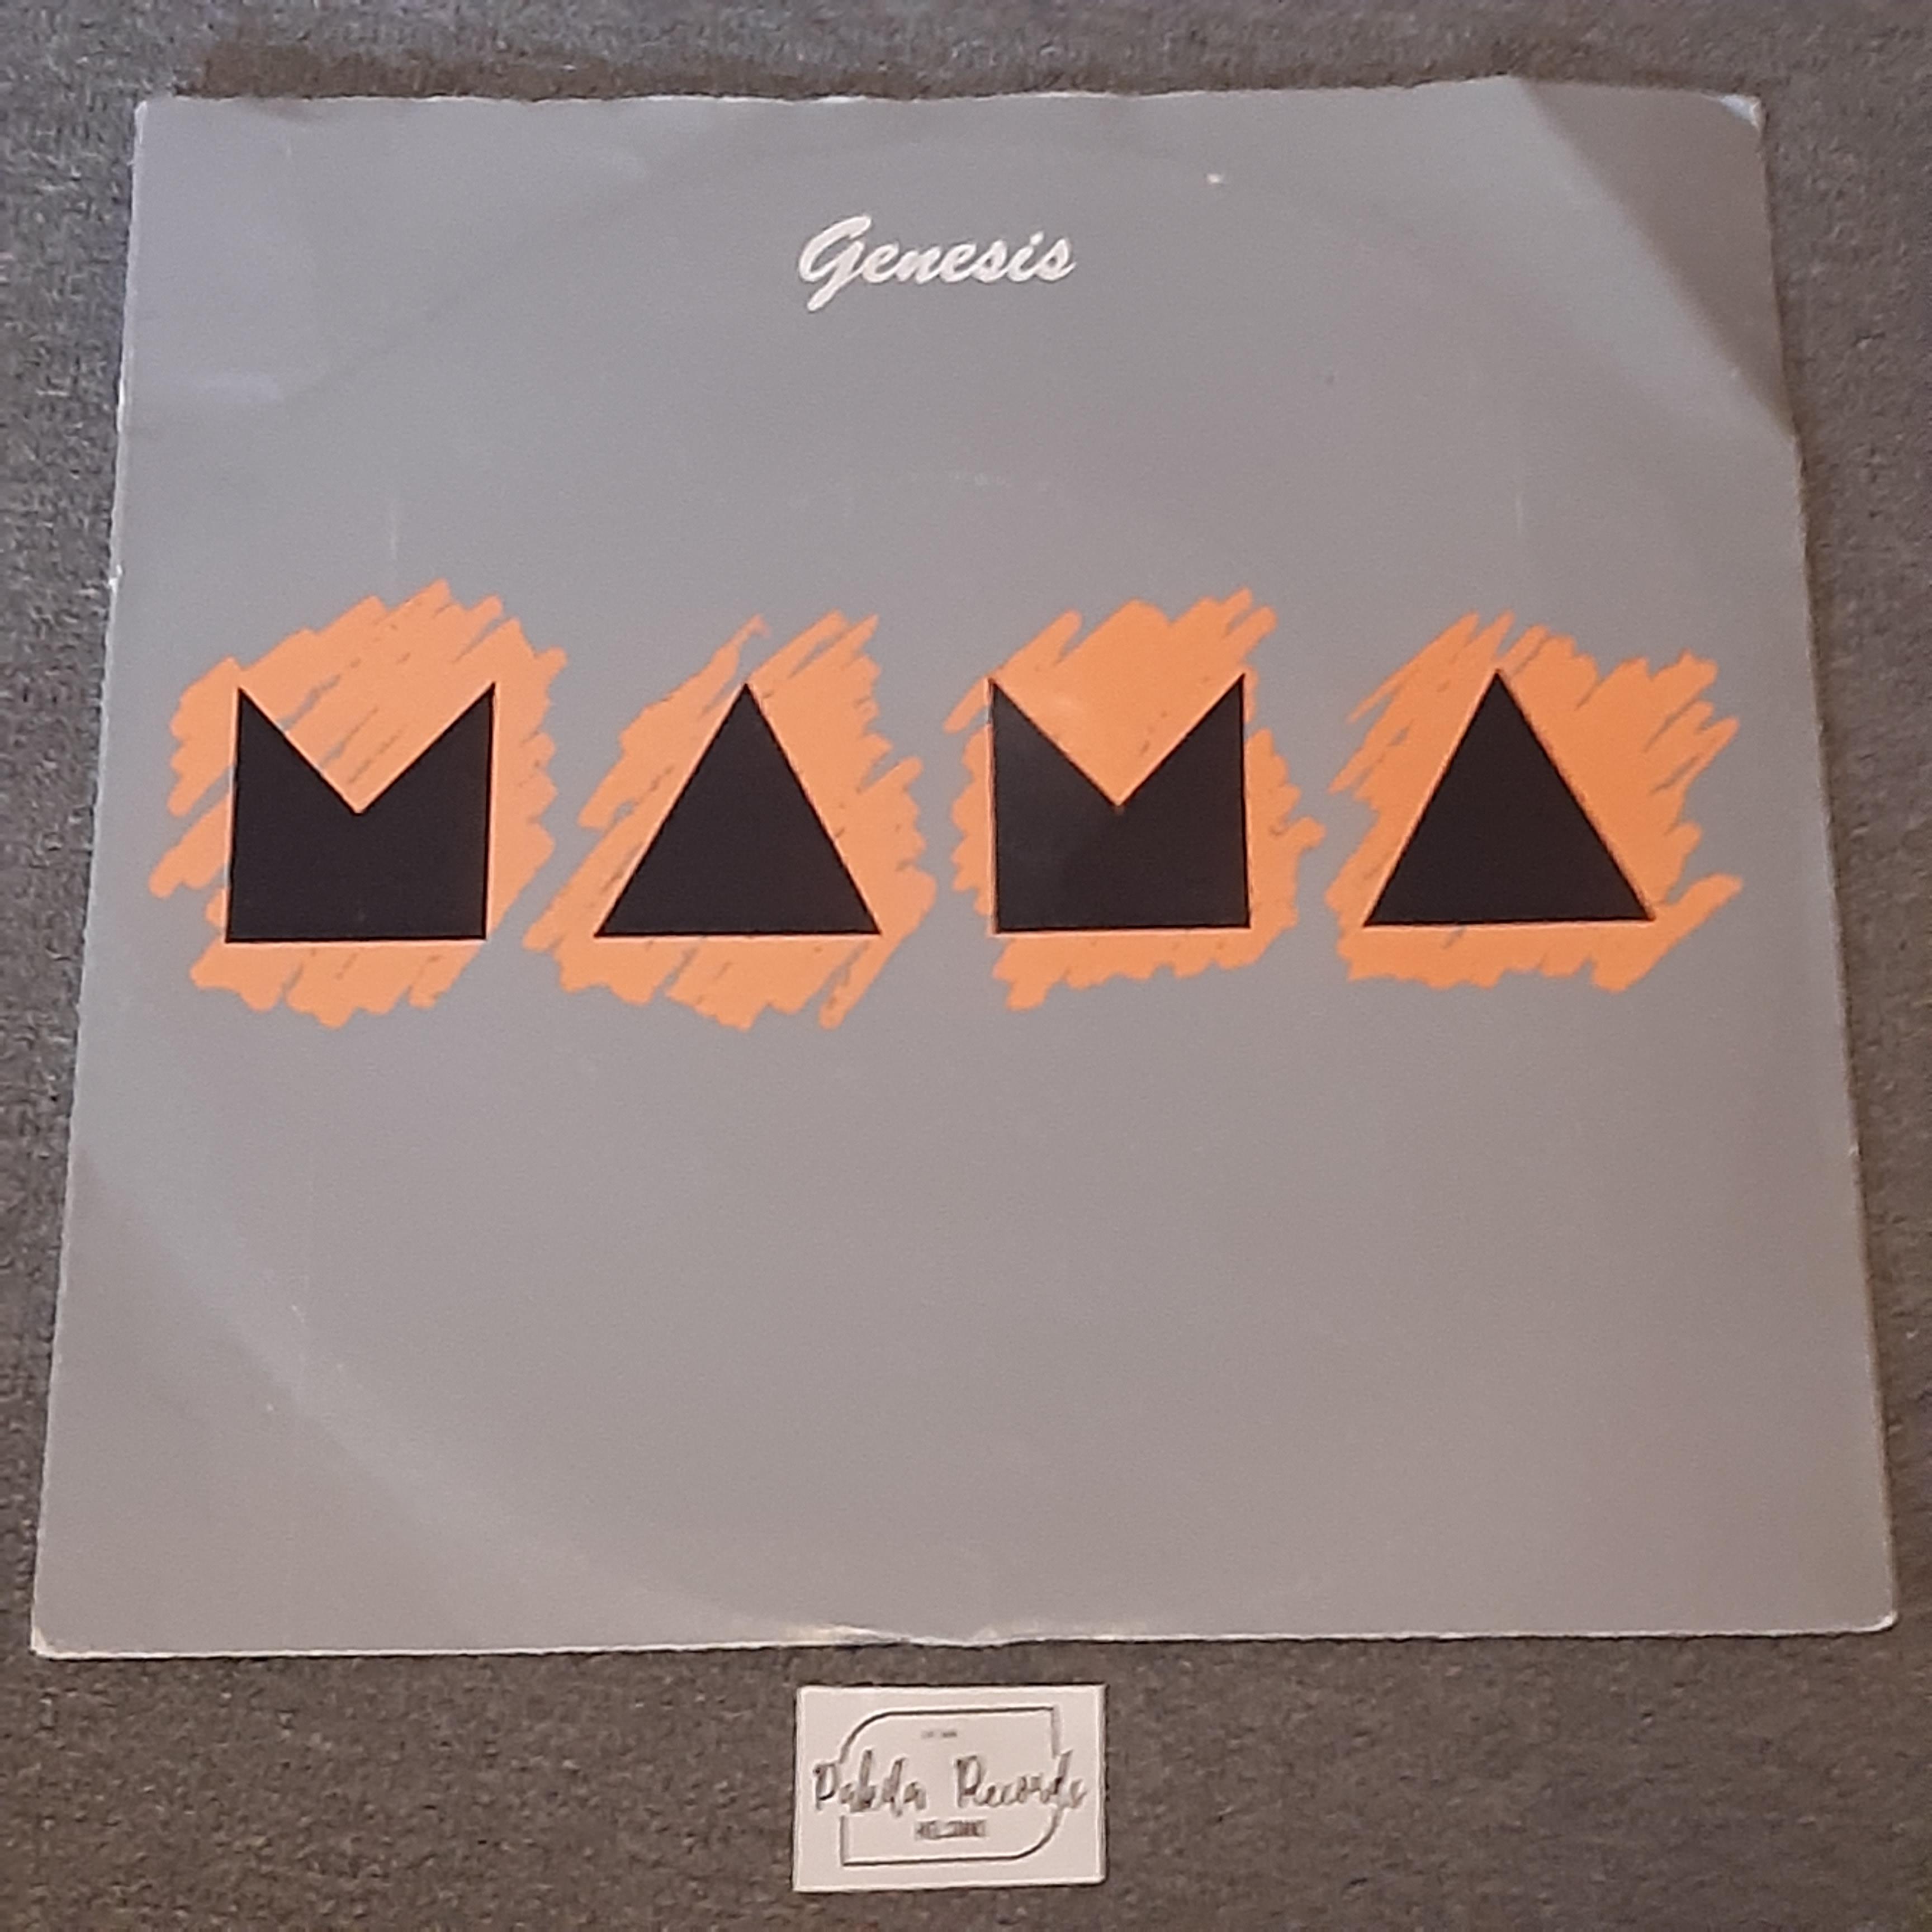 Genesis - Mama - Single 7" (käytetty)